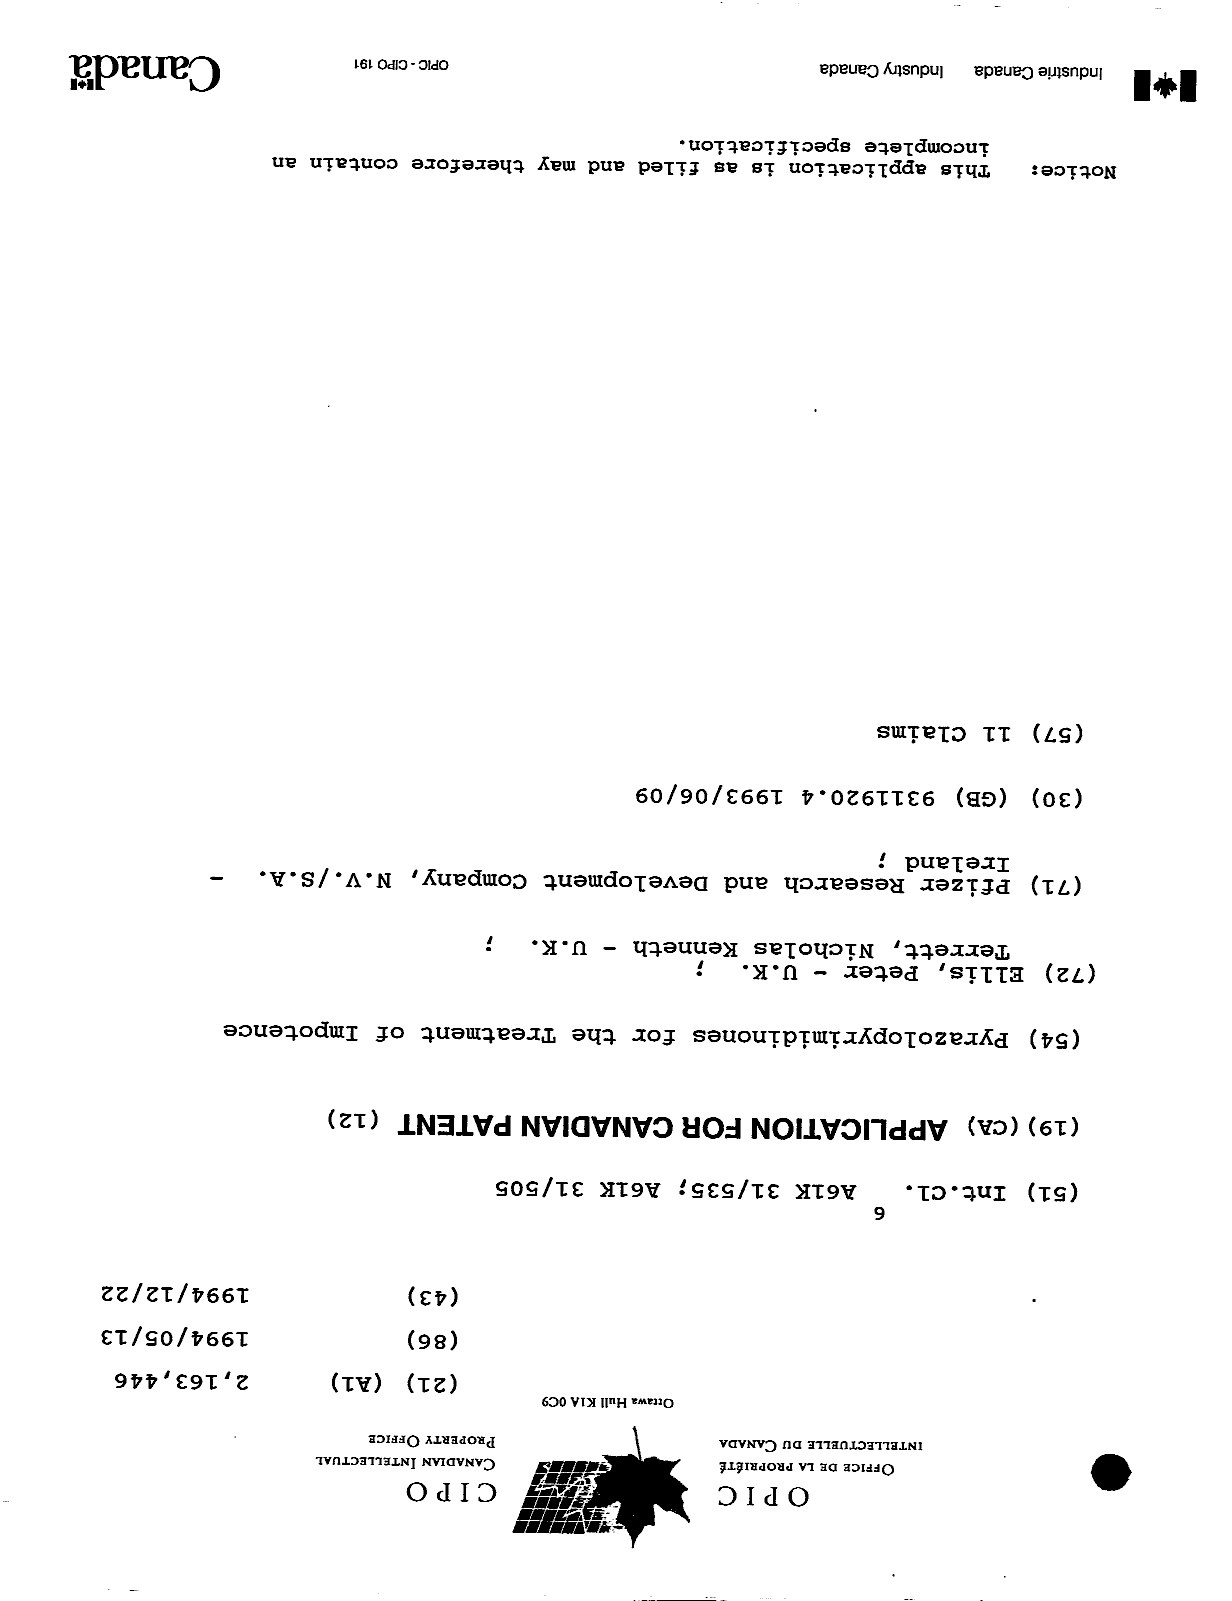 Document de brevet canadien 2163446. Page couverture 19951211. Image 1 de 1